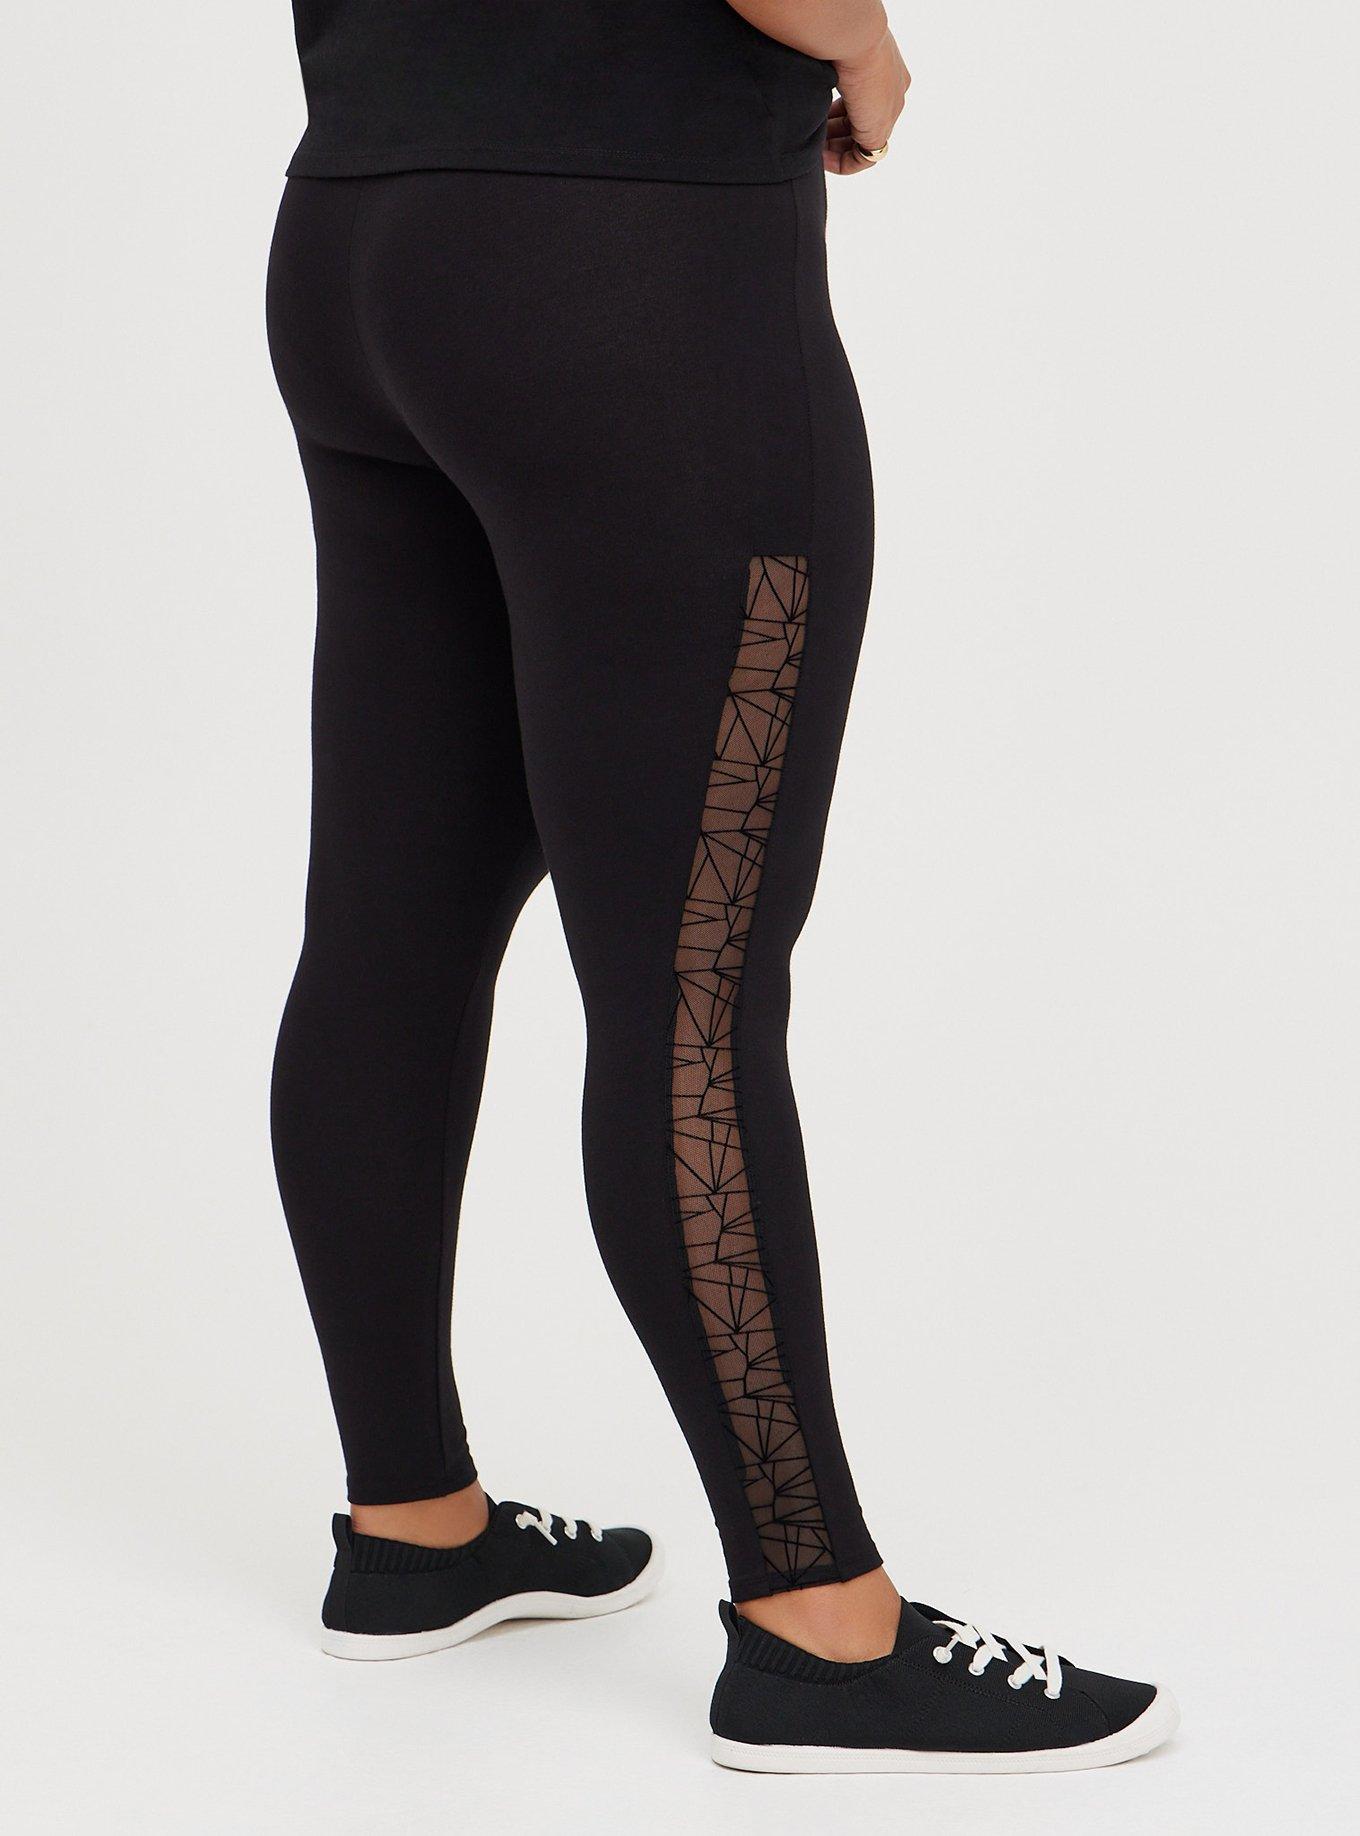 Plus Size - Premium Legging - Lasercut Cotton Black - Torrid